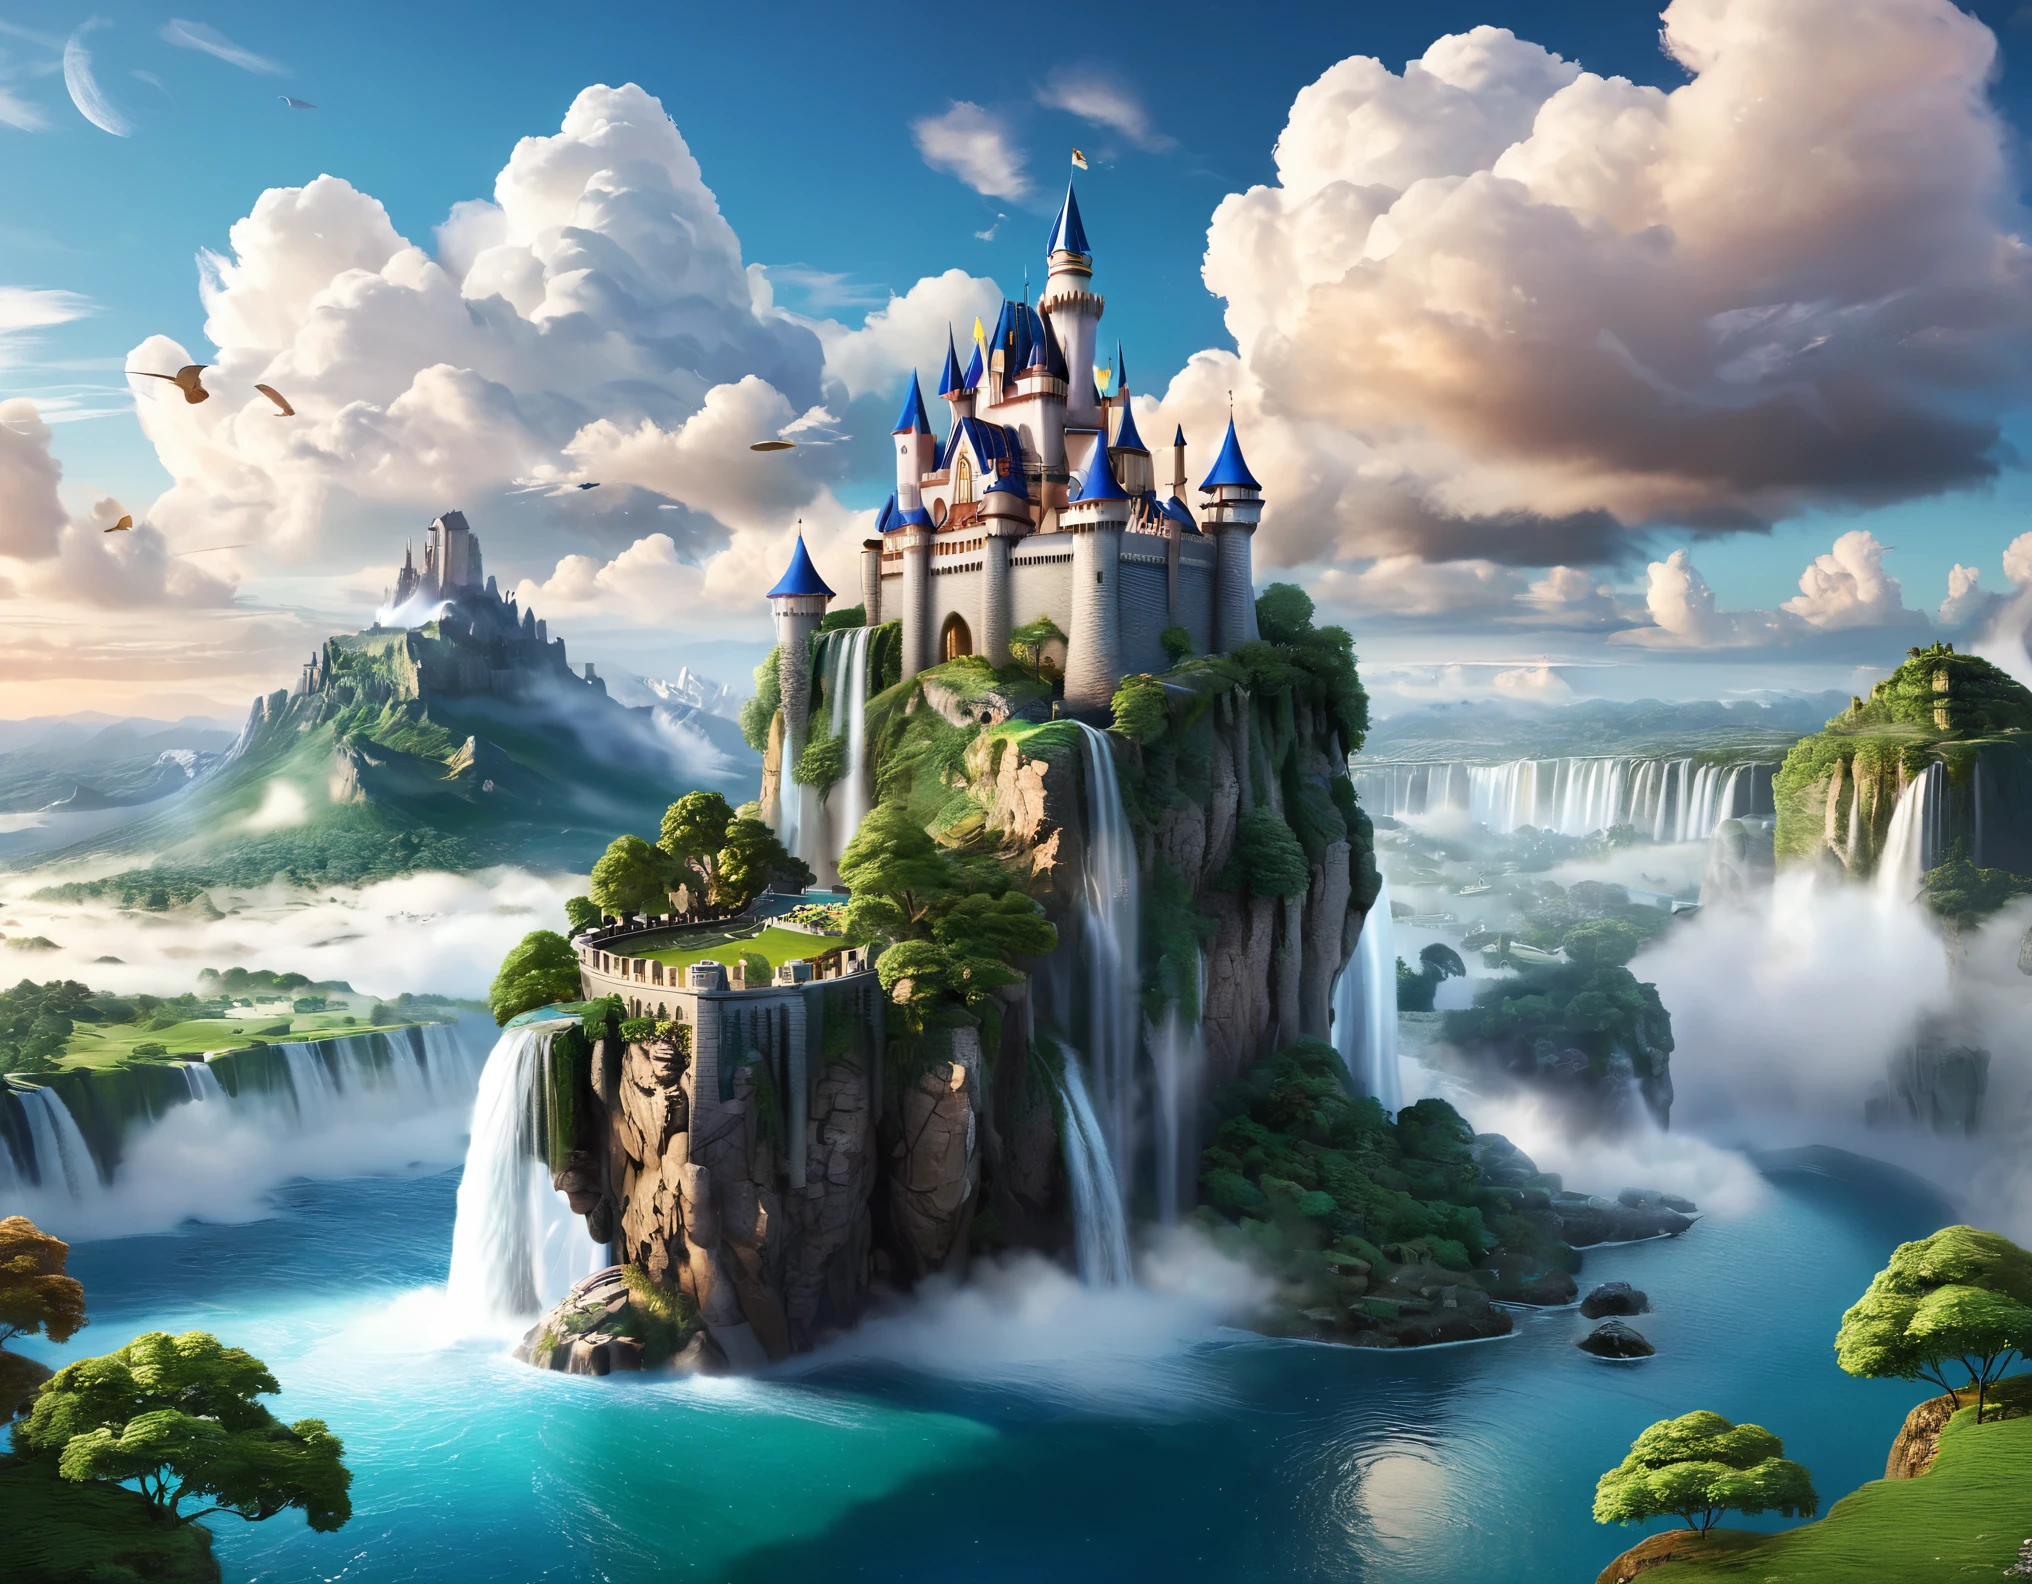 [Emoji de Castelo de Fantasia] Imagine uma paisagem etérea com um castelo suspenso nas nuvens. A cena deve ser intrinsecamente detalhada, com elementos hiper-realistas, como ilhas flutuantes e cascatas. Aproveite técnicas de renderização realistas para garantir que os elementos fantásticos se misturem perfeitamente com o cenário fotorrealista. Otimize a imagem para resolução de 8K para mostrar a qualidade envolvente da fantasia etérea.